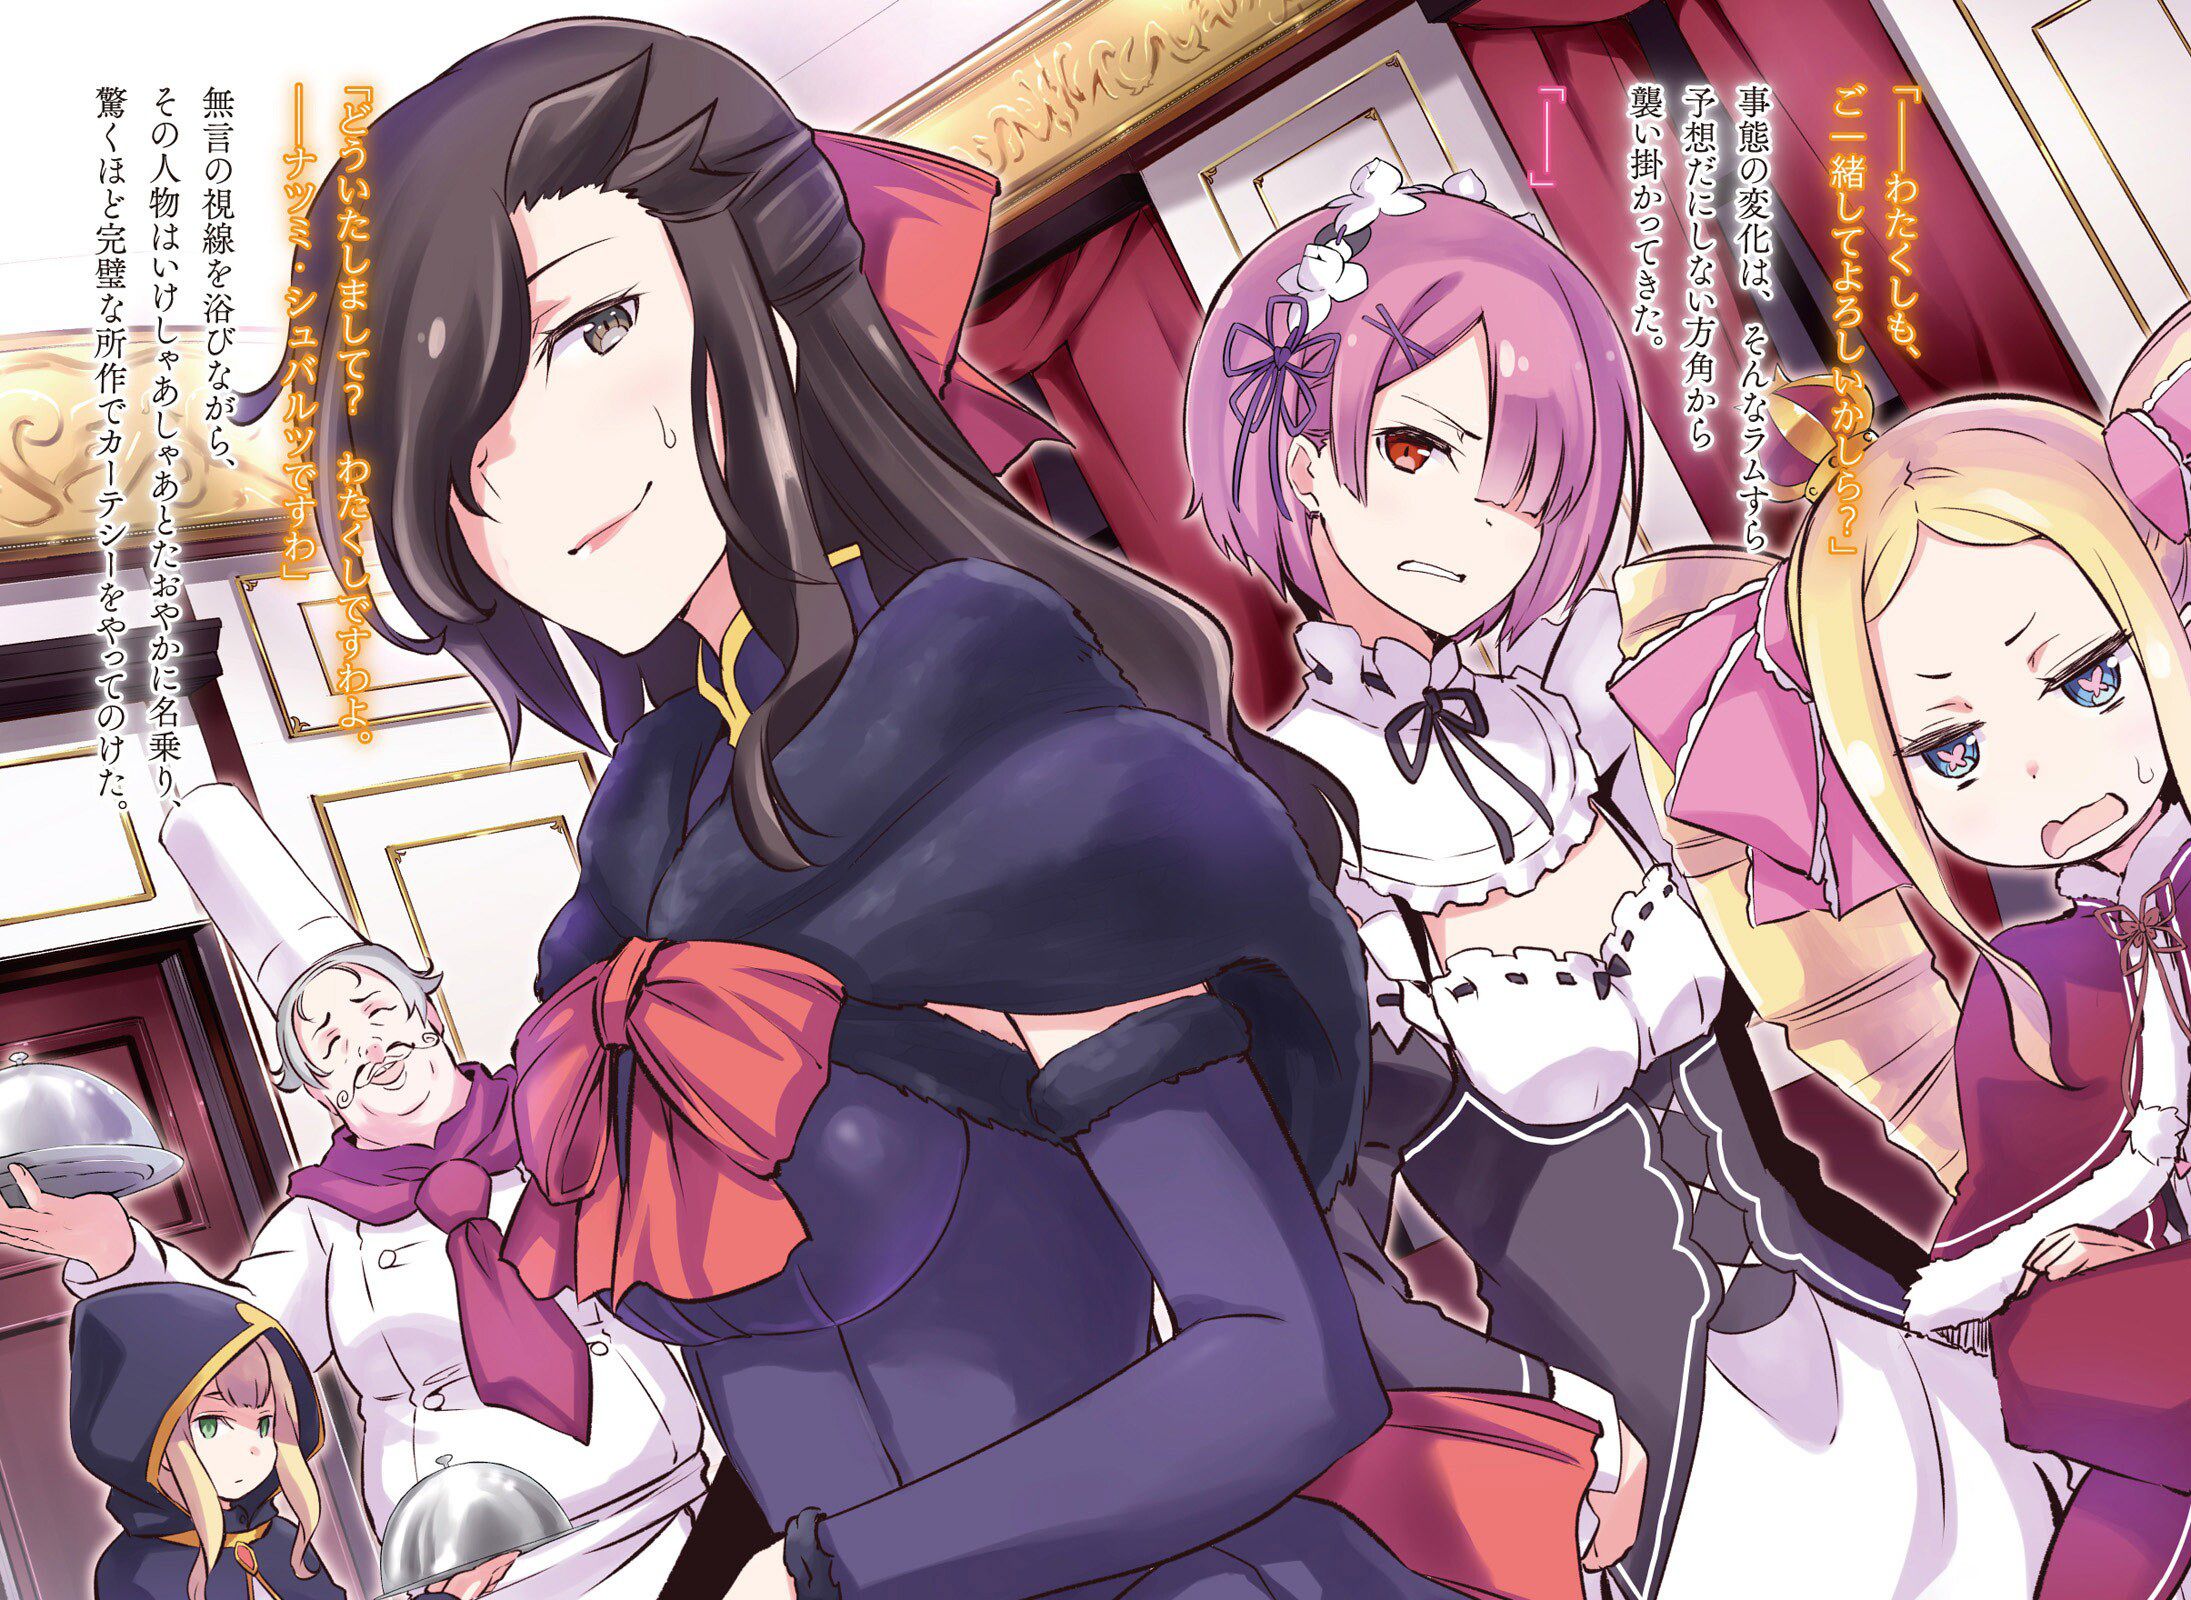 Rezero's Oni Kawaii Erotica Image Summary. vol.5 3